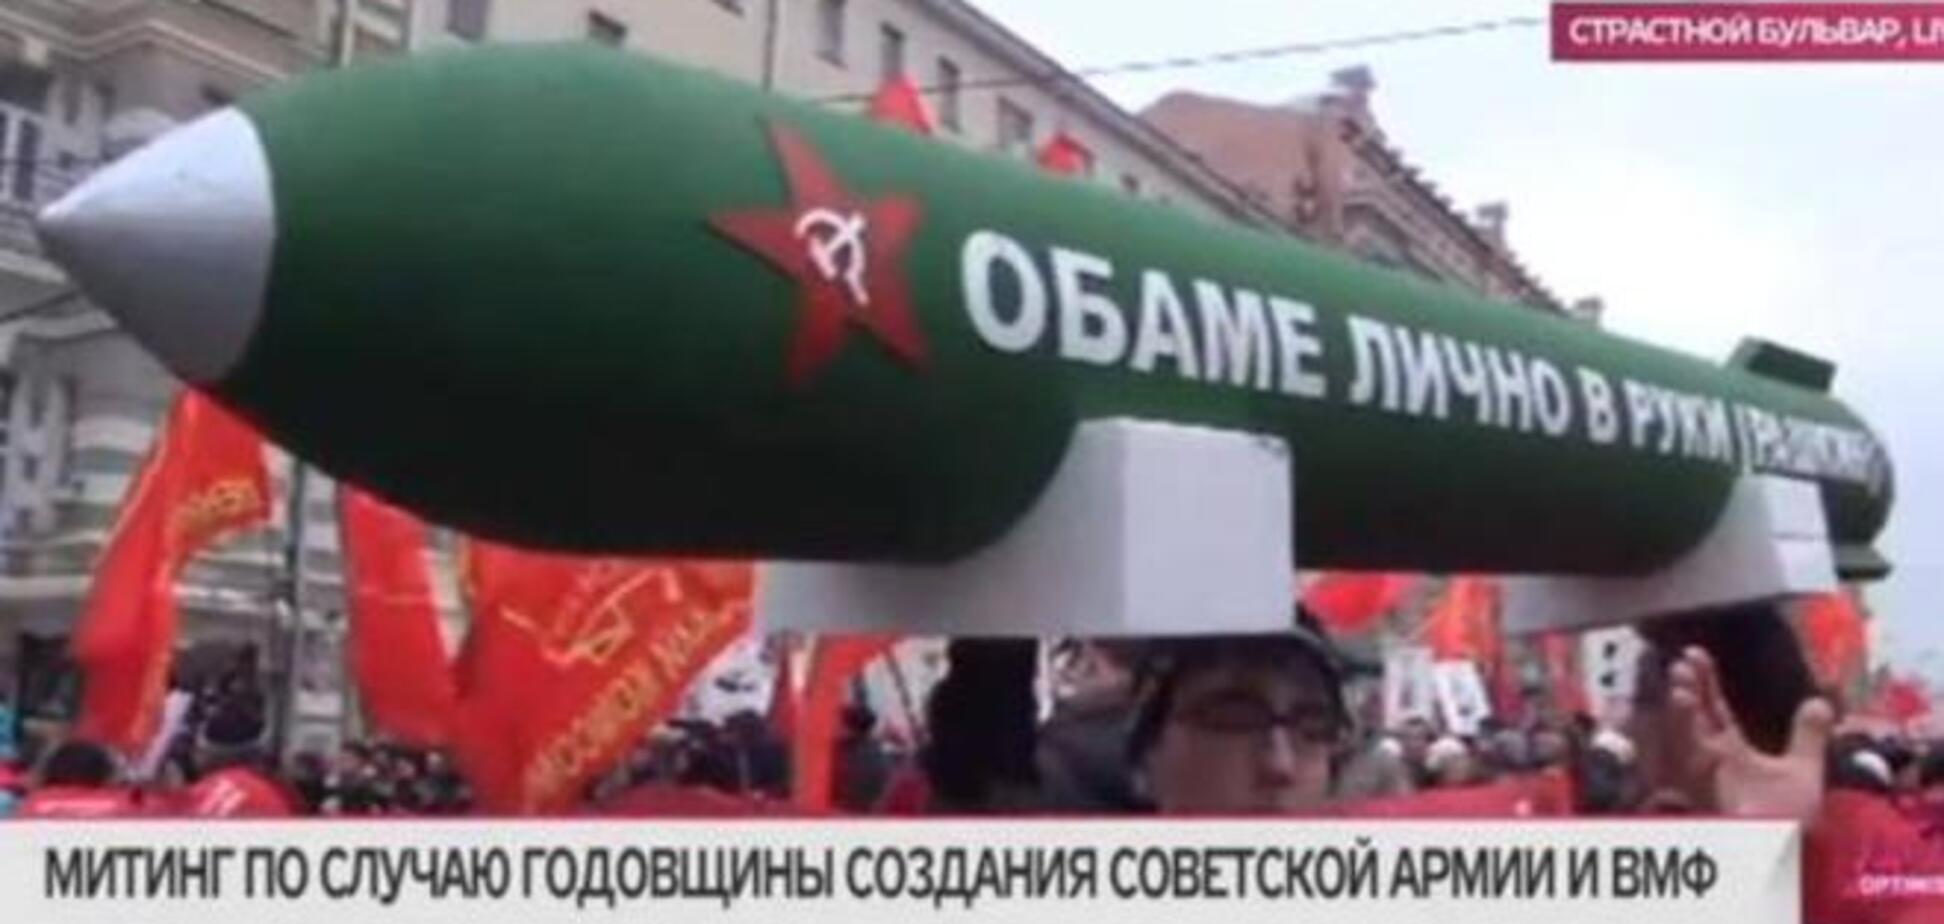 Коммунисты в Москве принесли на парад 'бомбу для Обамы' с перевернутым серпом и молотом: фотофакт